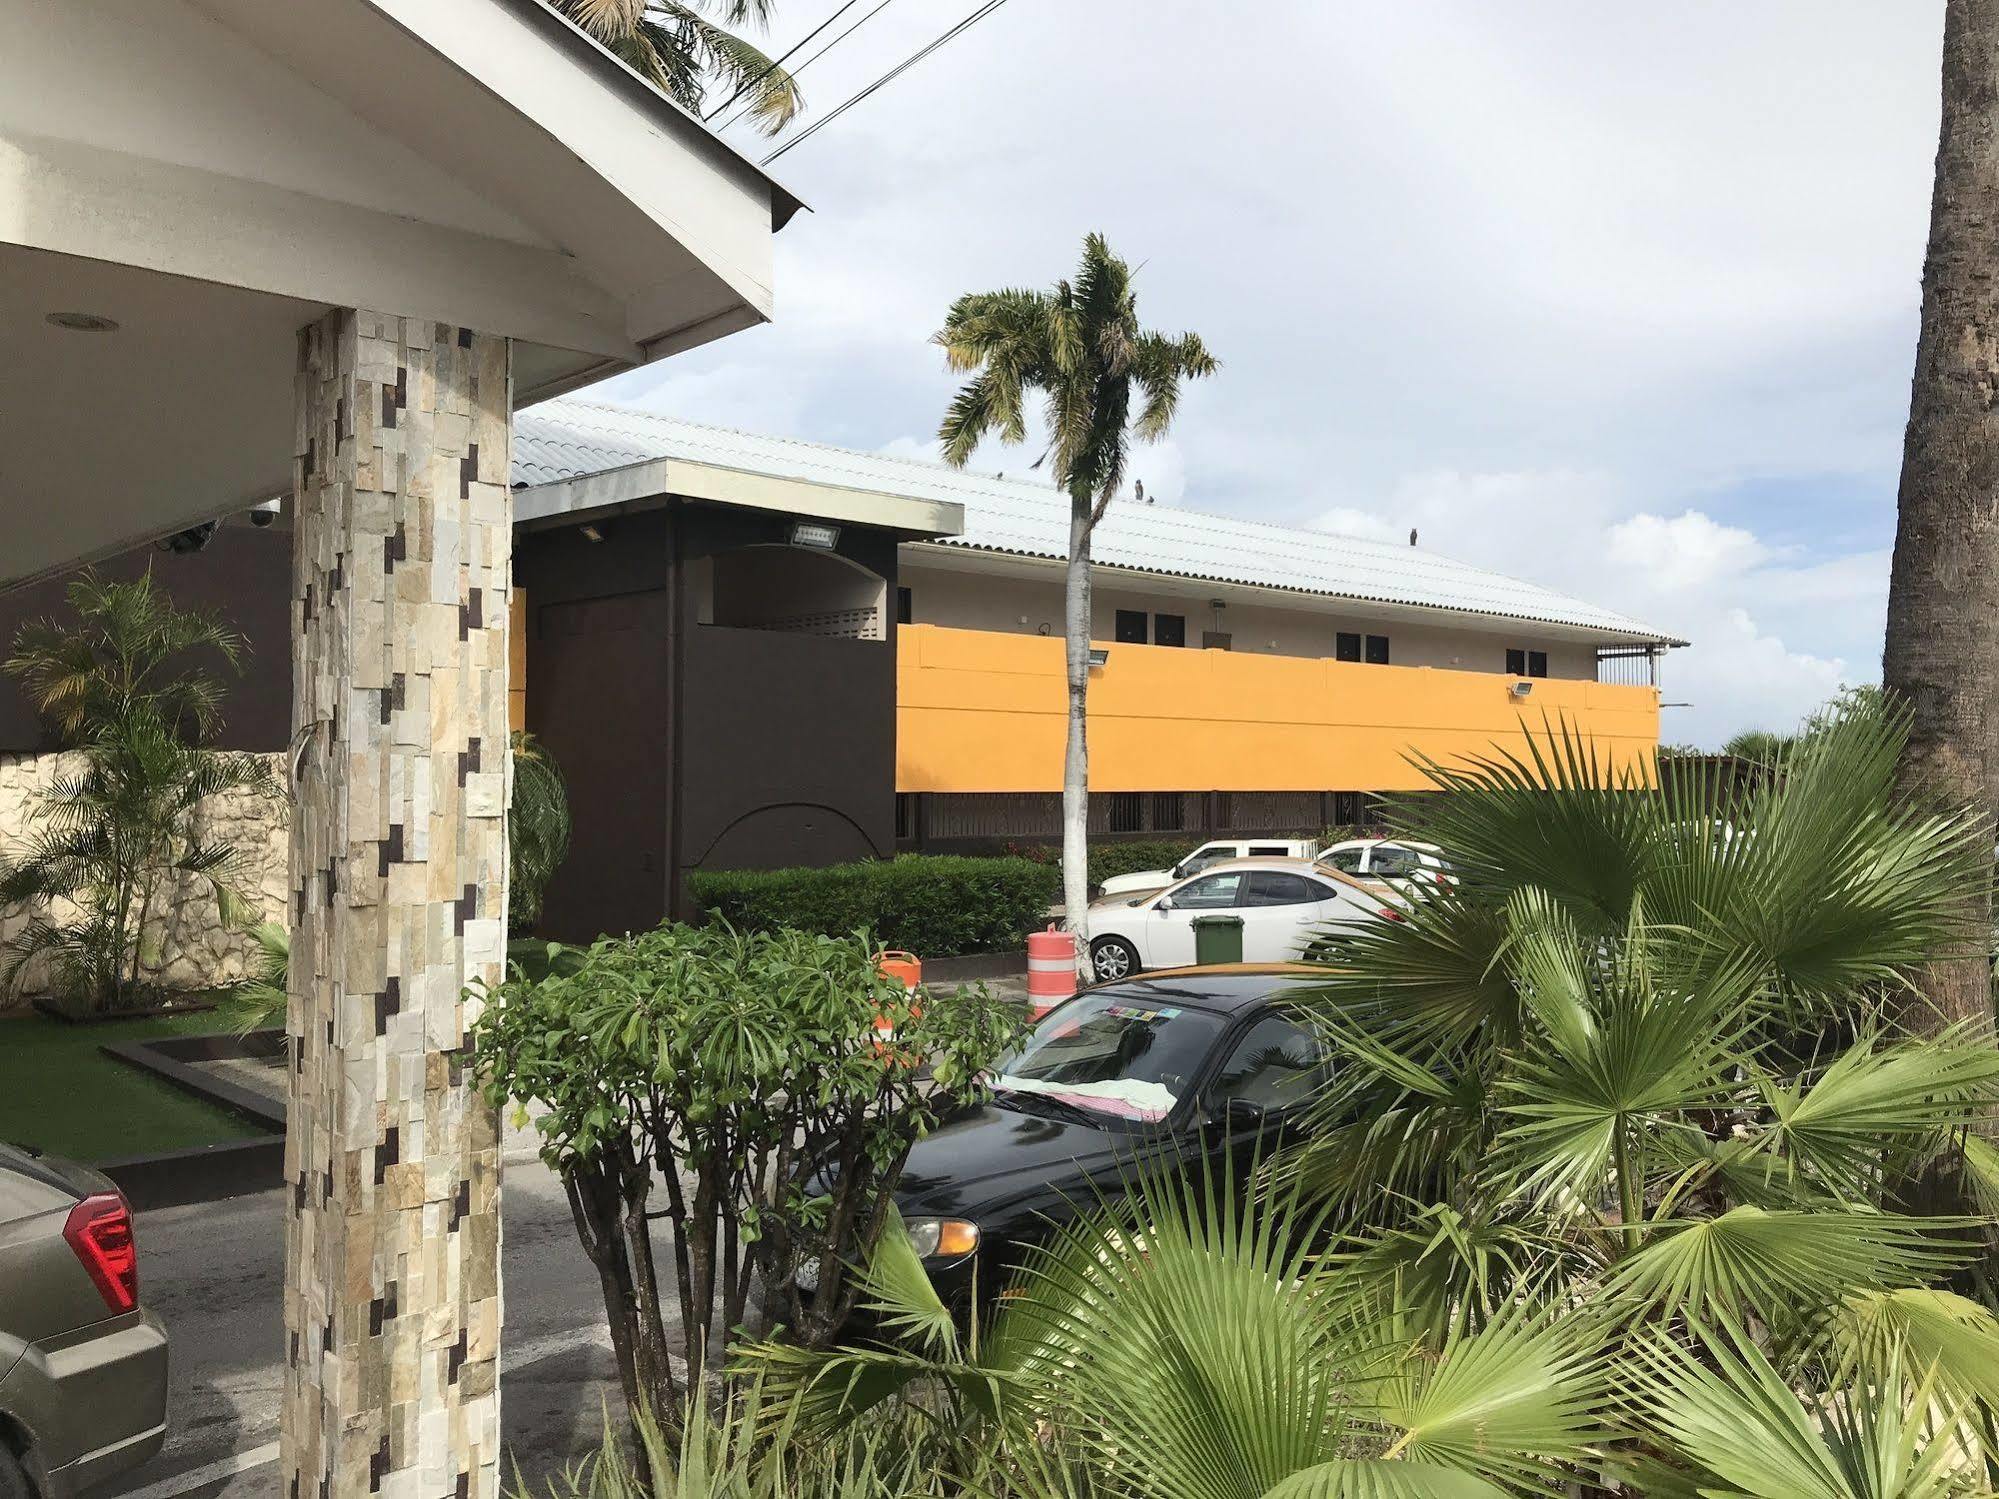 Curacao Airport Hotel Willemstad Zewnętrze zdjęcie